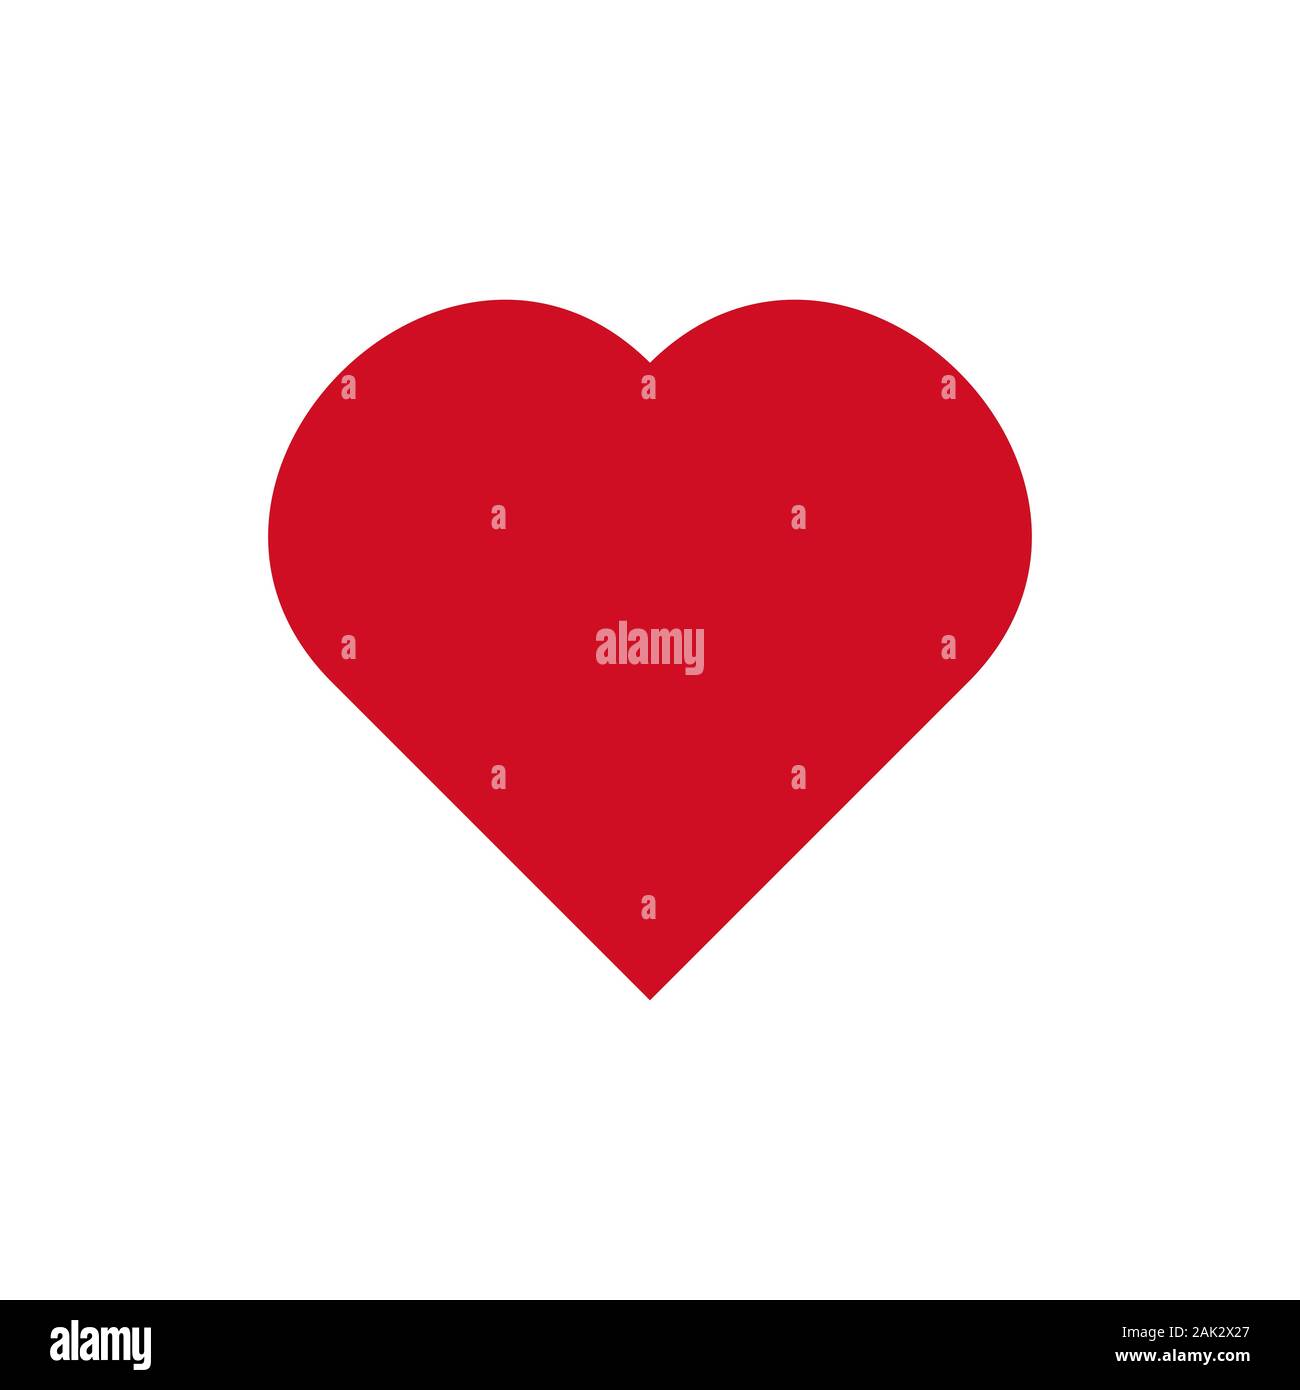 love icon - vector heart illustration, valentine romantic concept Stock Vector